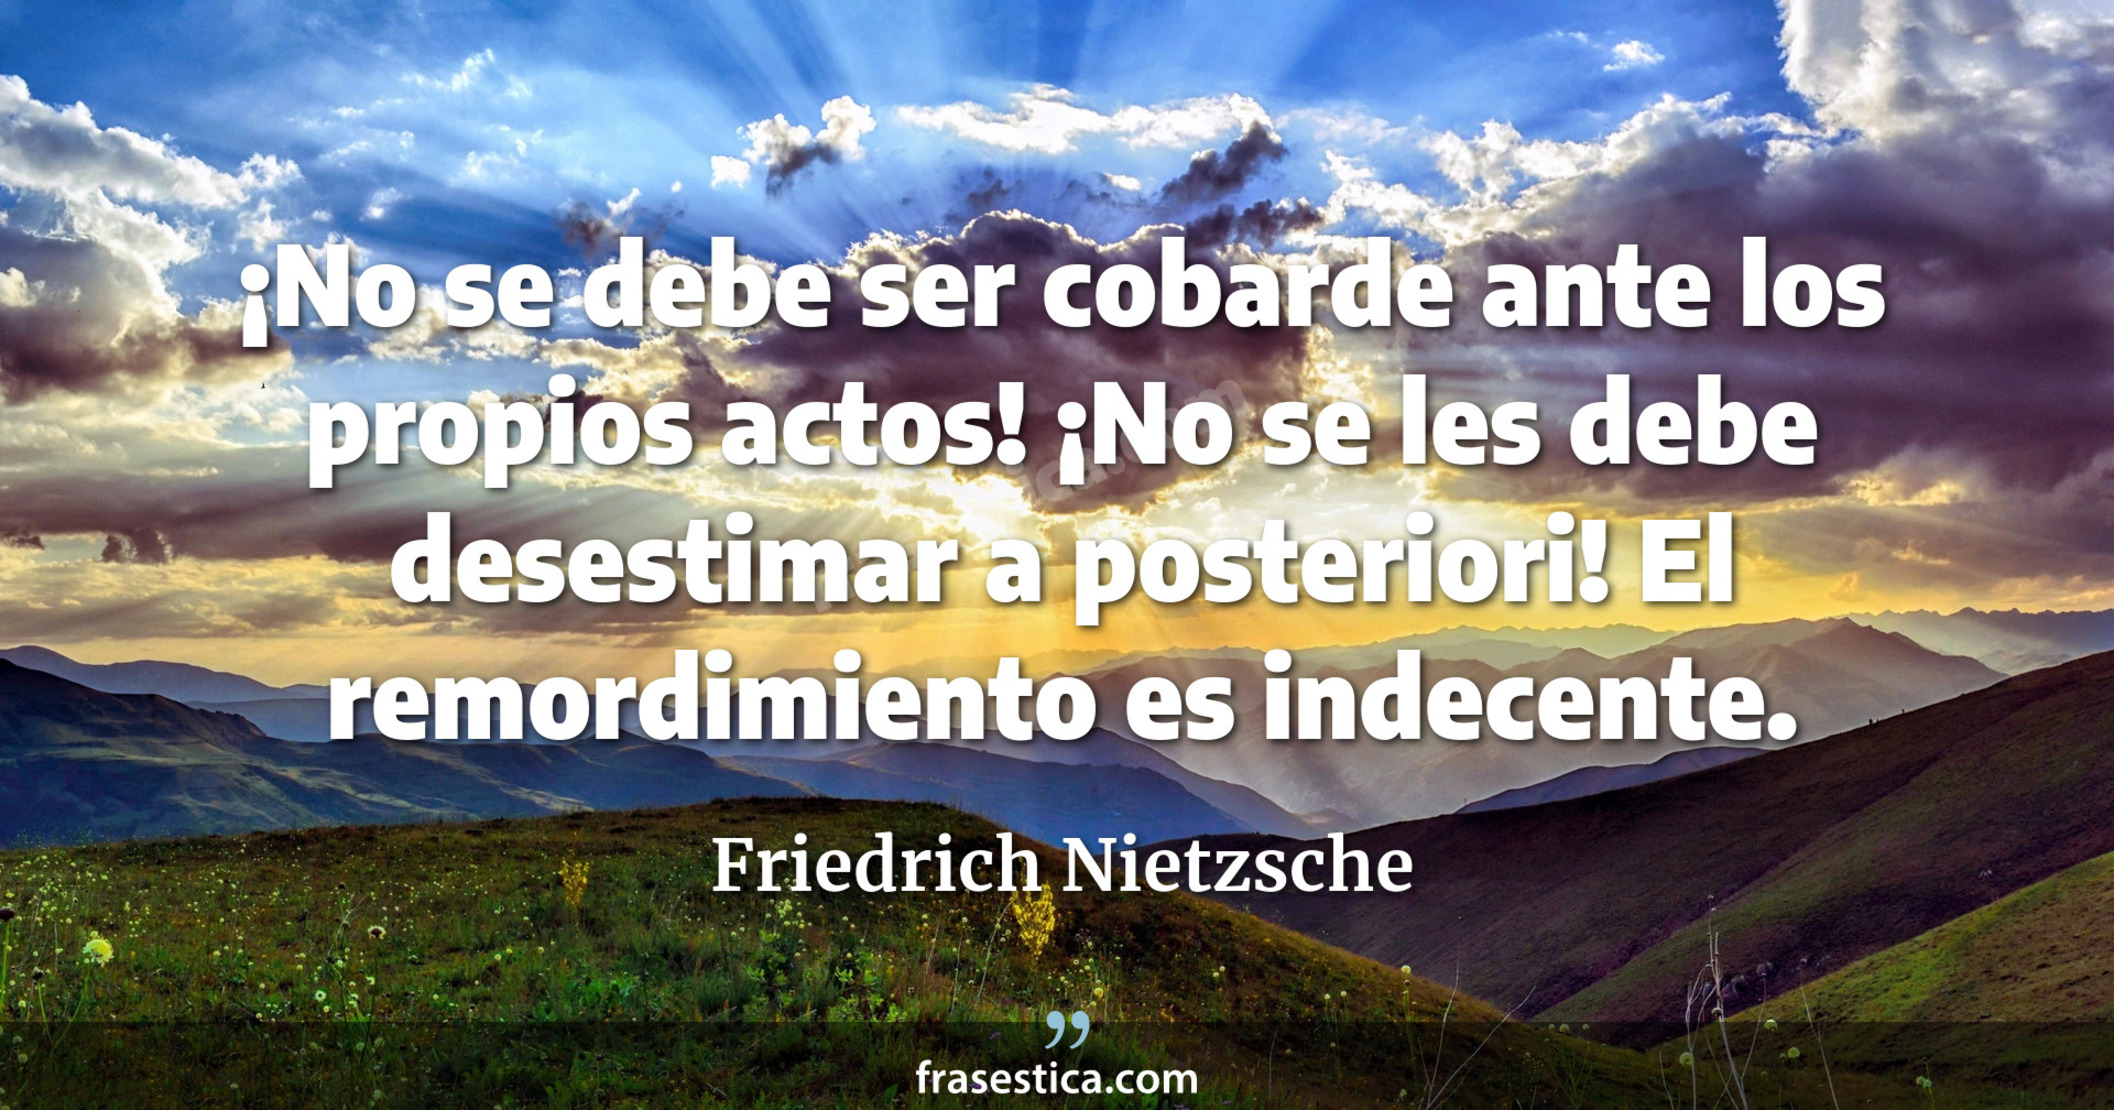 ¡No se debe ser cobarde ante los propios actos! ¡No se les debe desestimar a posteriori! El remordimiento es indecente. - Friedrich Nietzsche